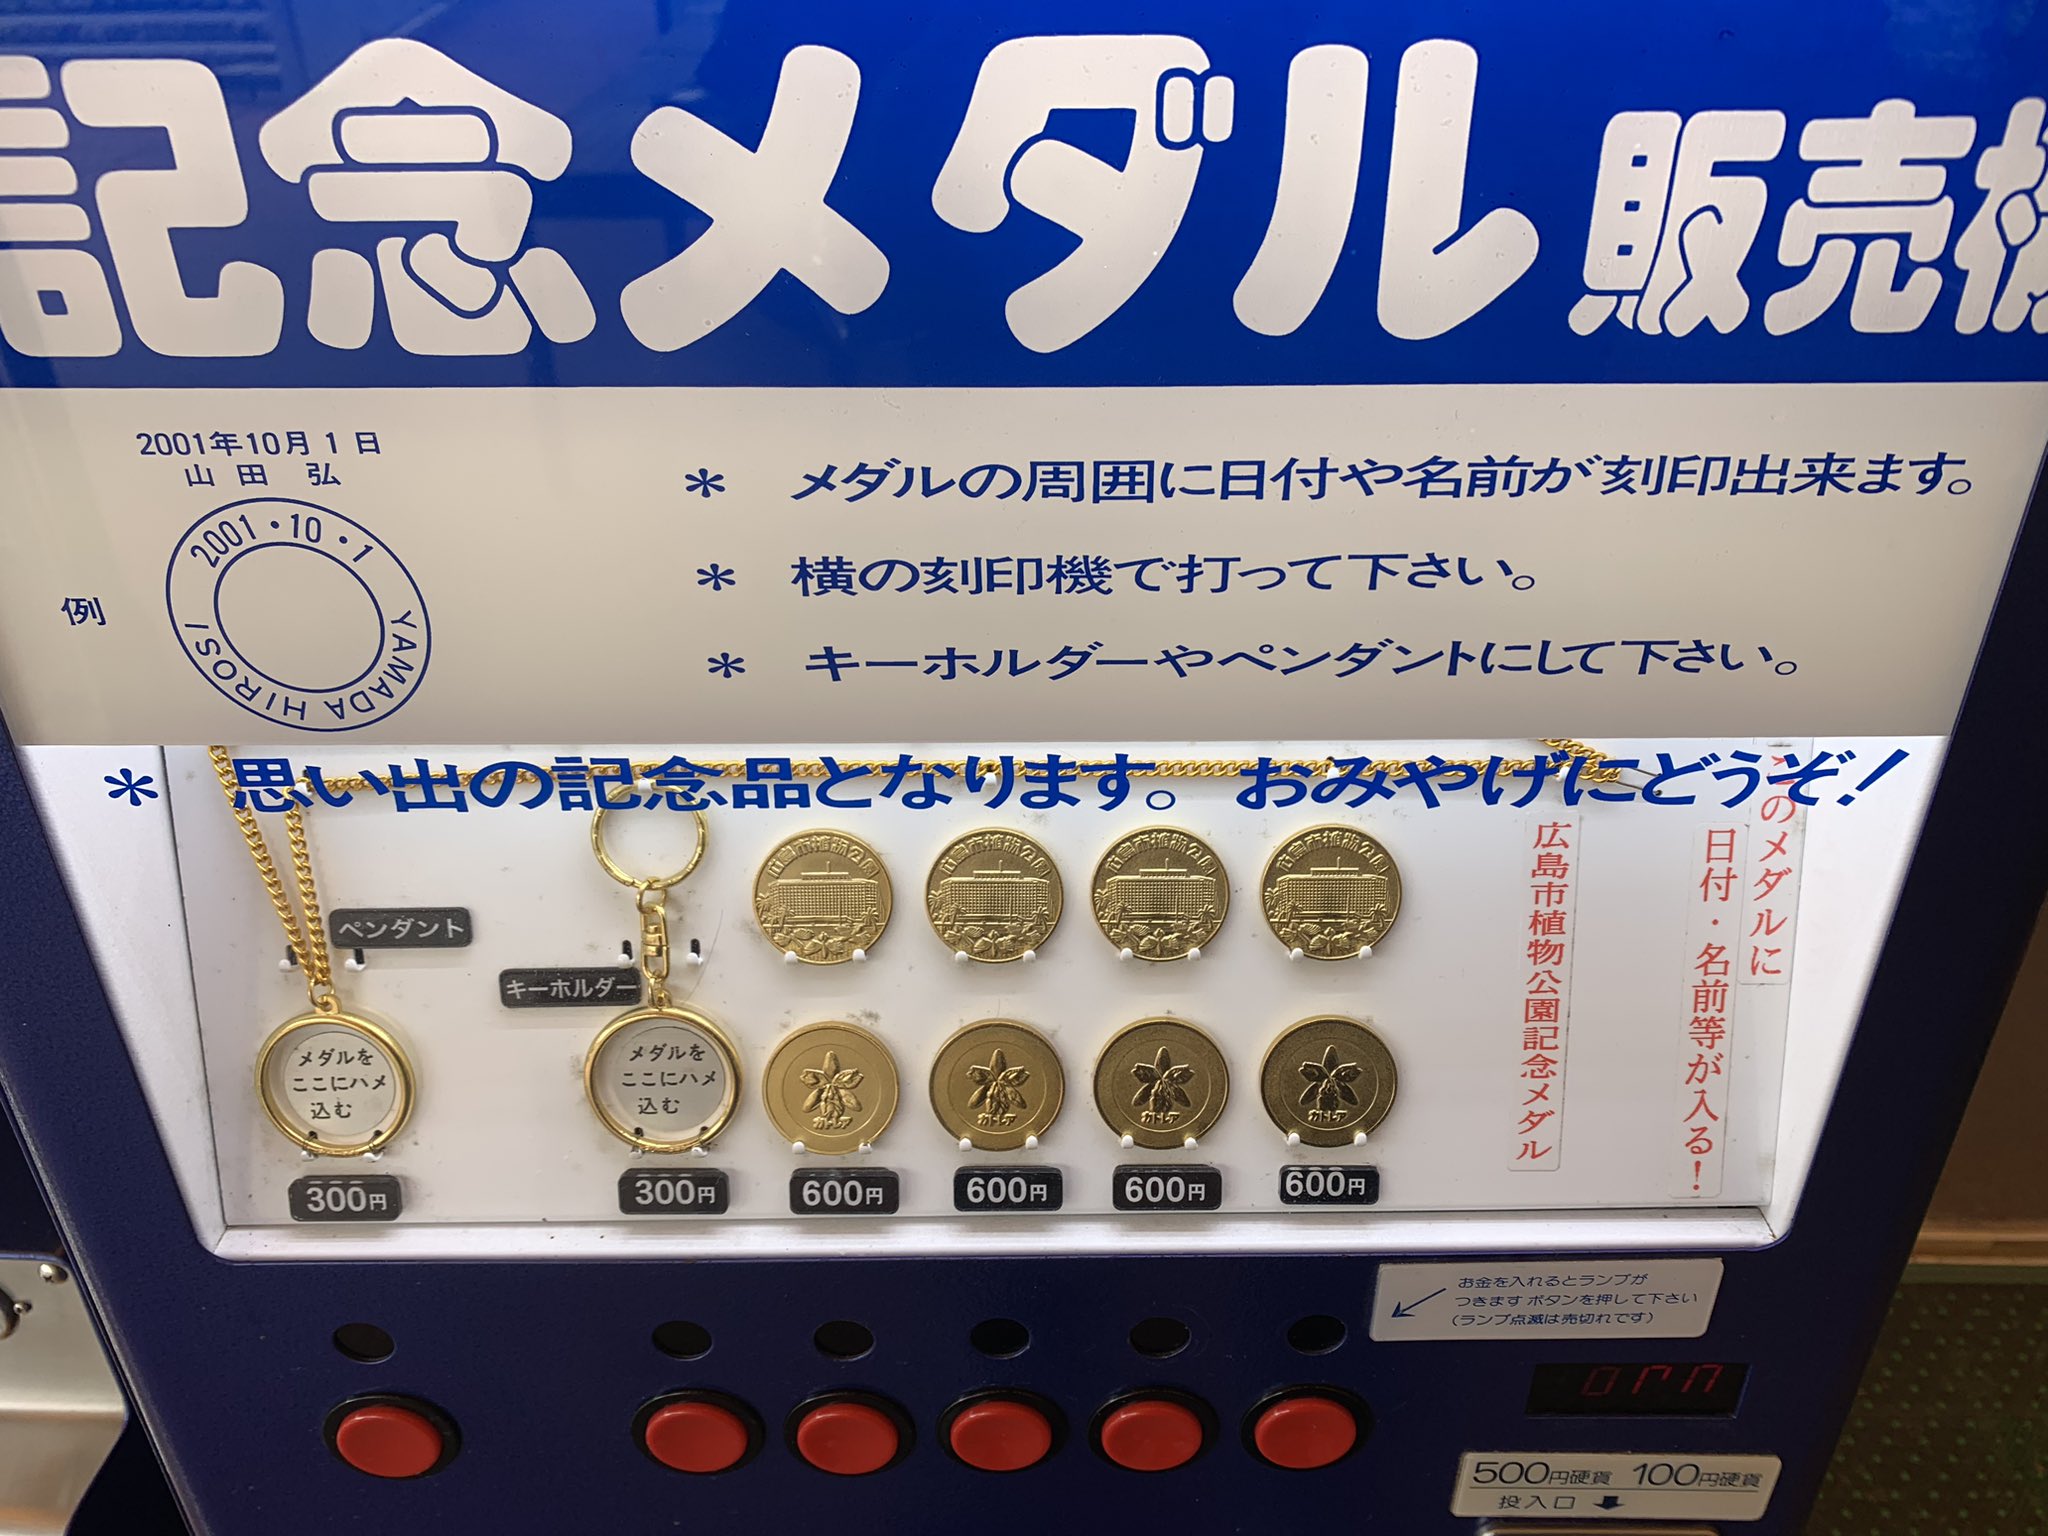 二見シーワールド アザラシ 記念メダル 茶平工業+apple-en.jp